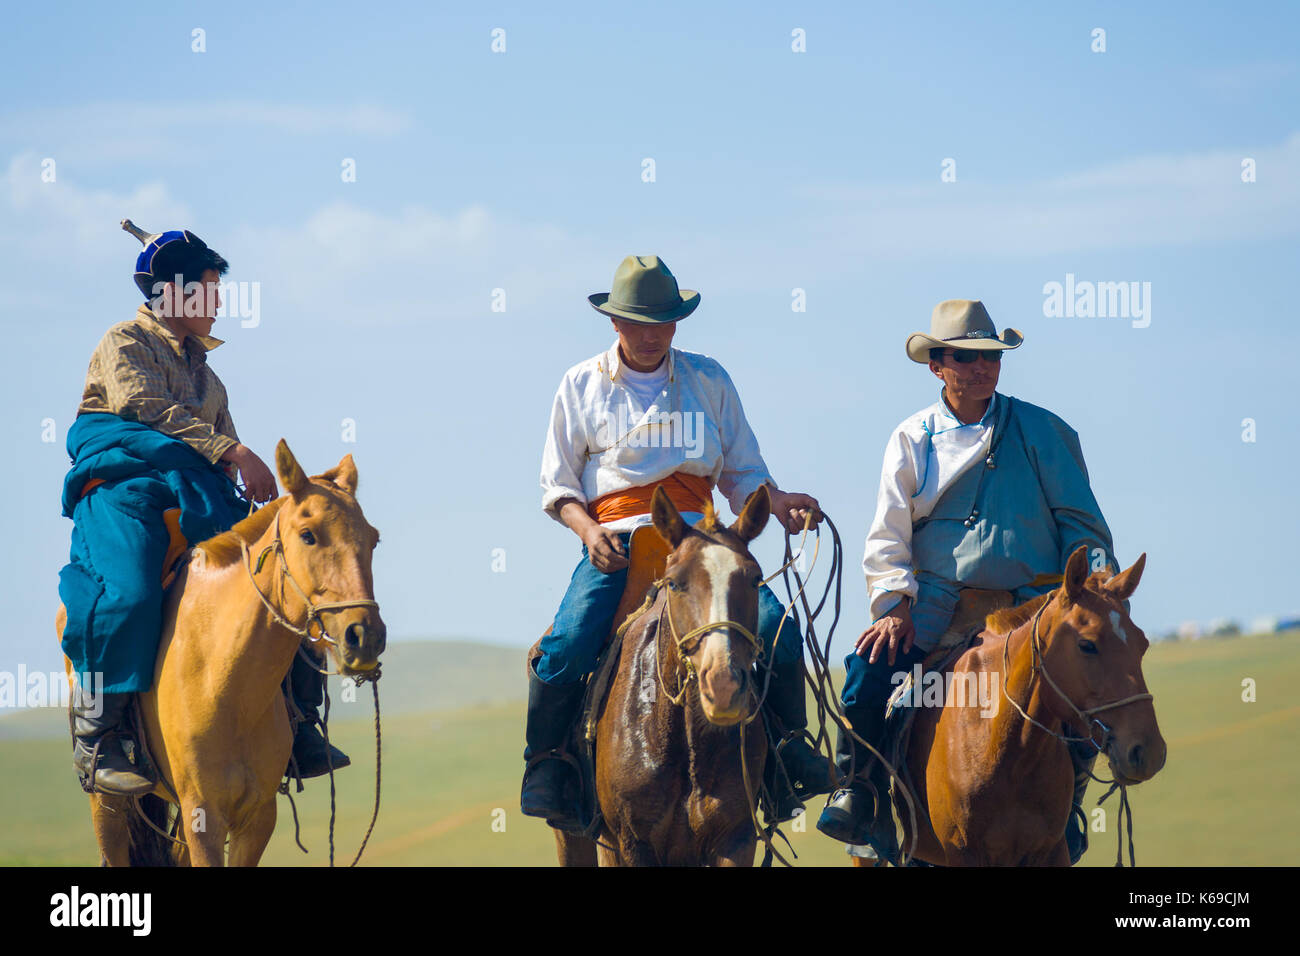 Oulan-bator, Mongolie - 12 juin 2007 : trois cowboys de Mongolie à cheval chevaux équitation approche en vêtements traditionnels et de chapeaux de cow-boy Banque D'Images